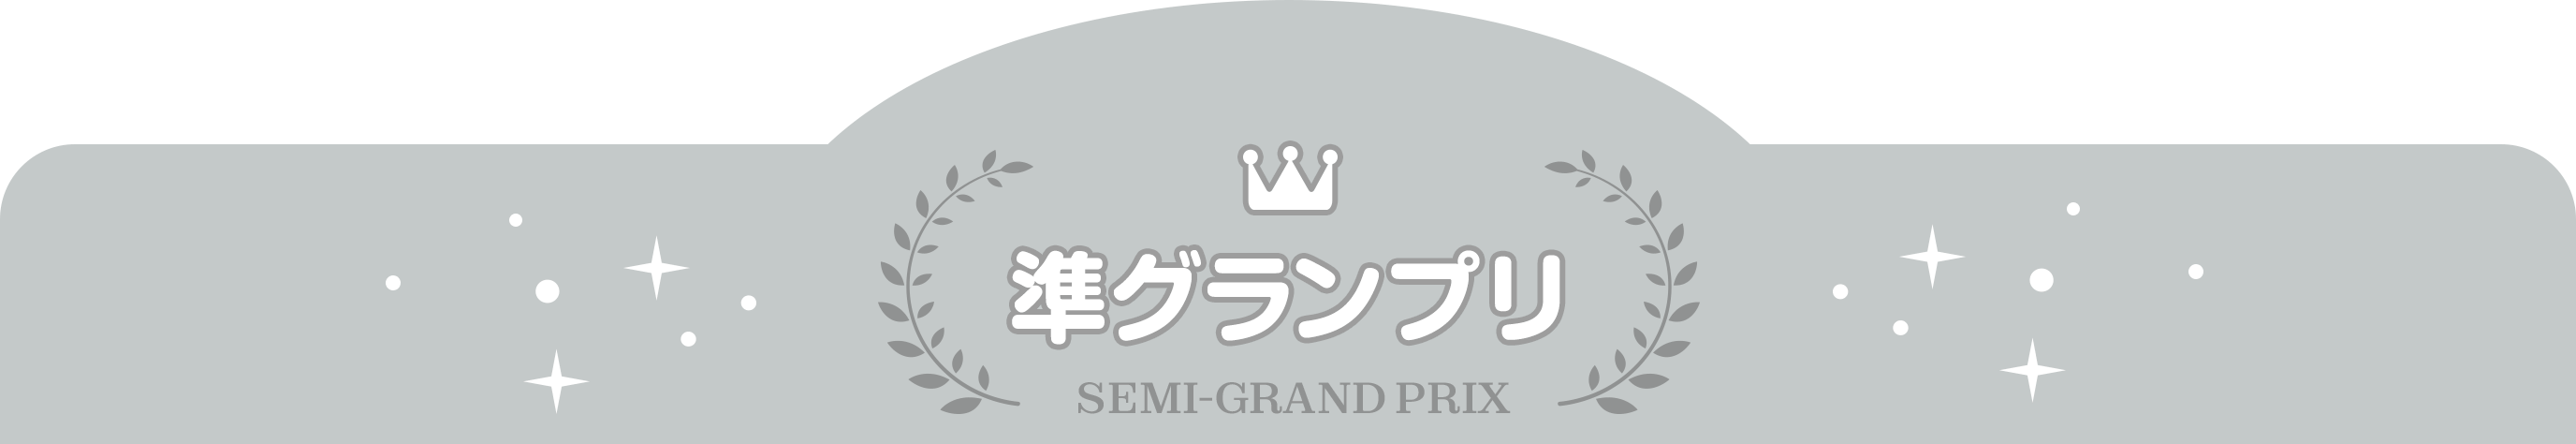 準グランプリ SEMI-GRAND PRIX